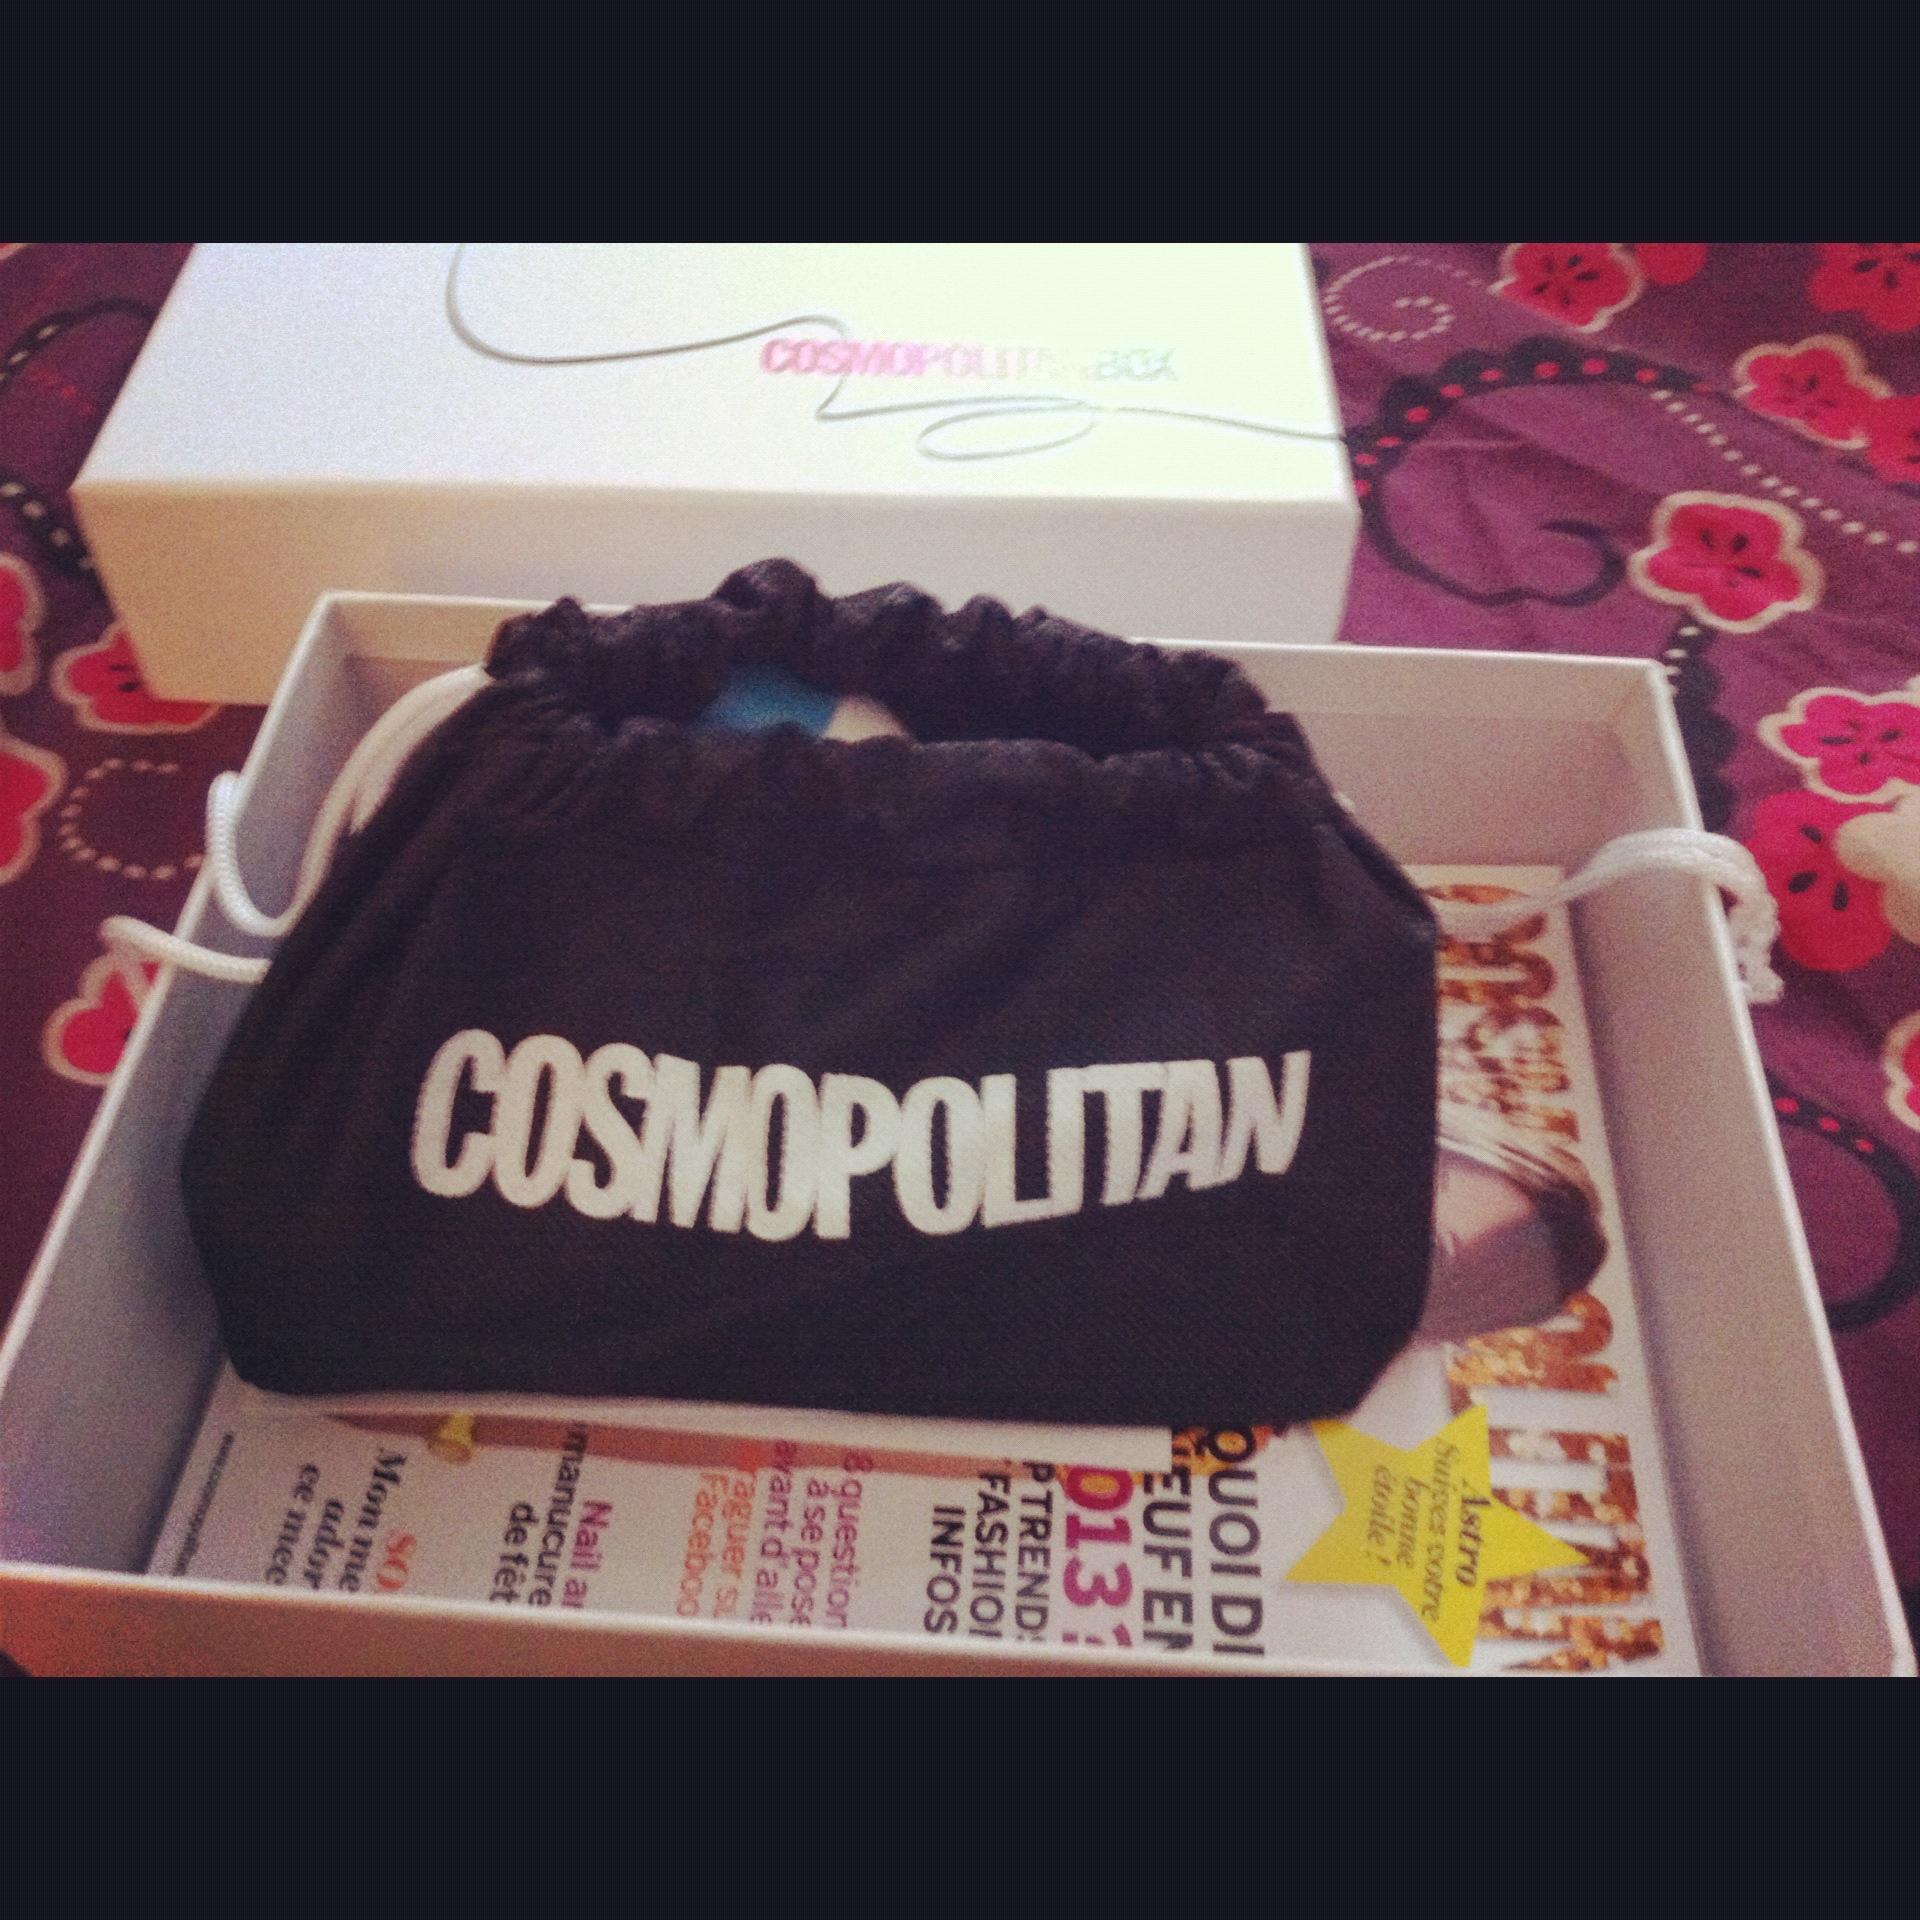 Cosmopolitan box de Décembre: une bonne surprise!